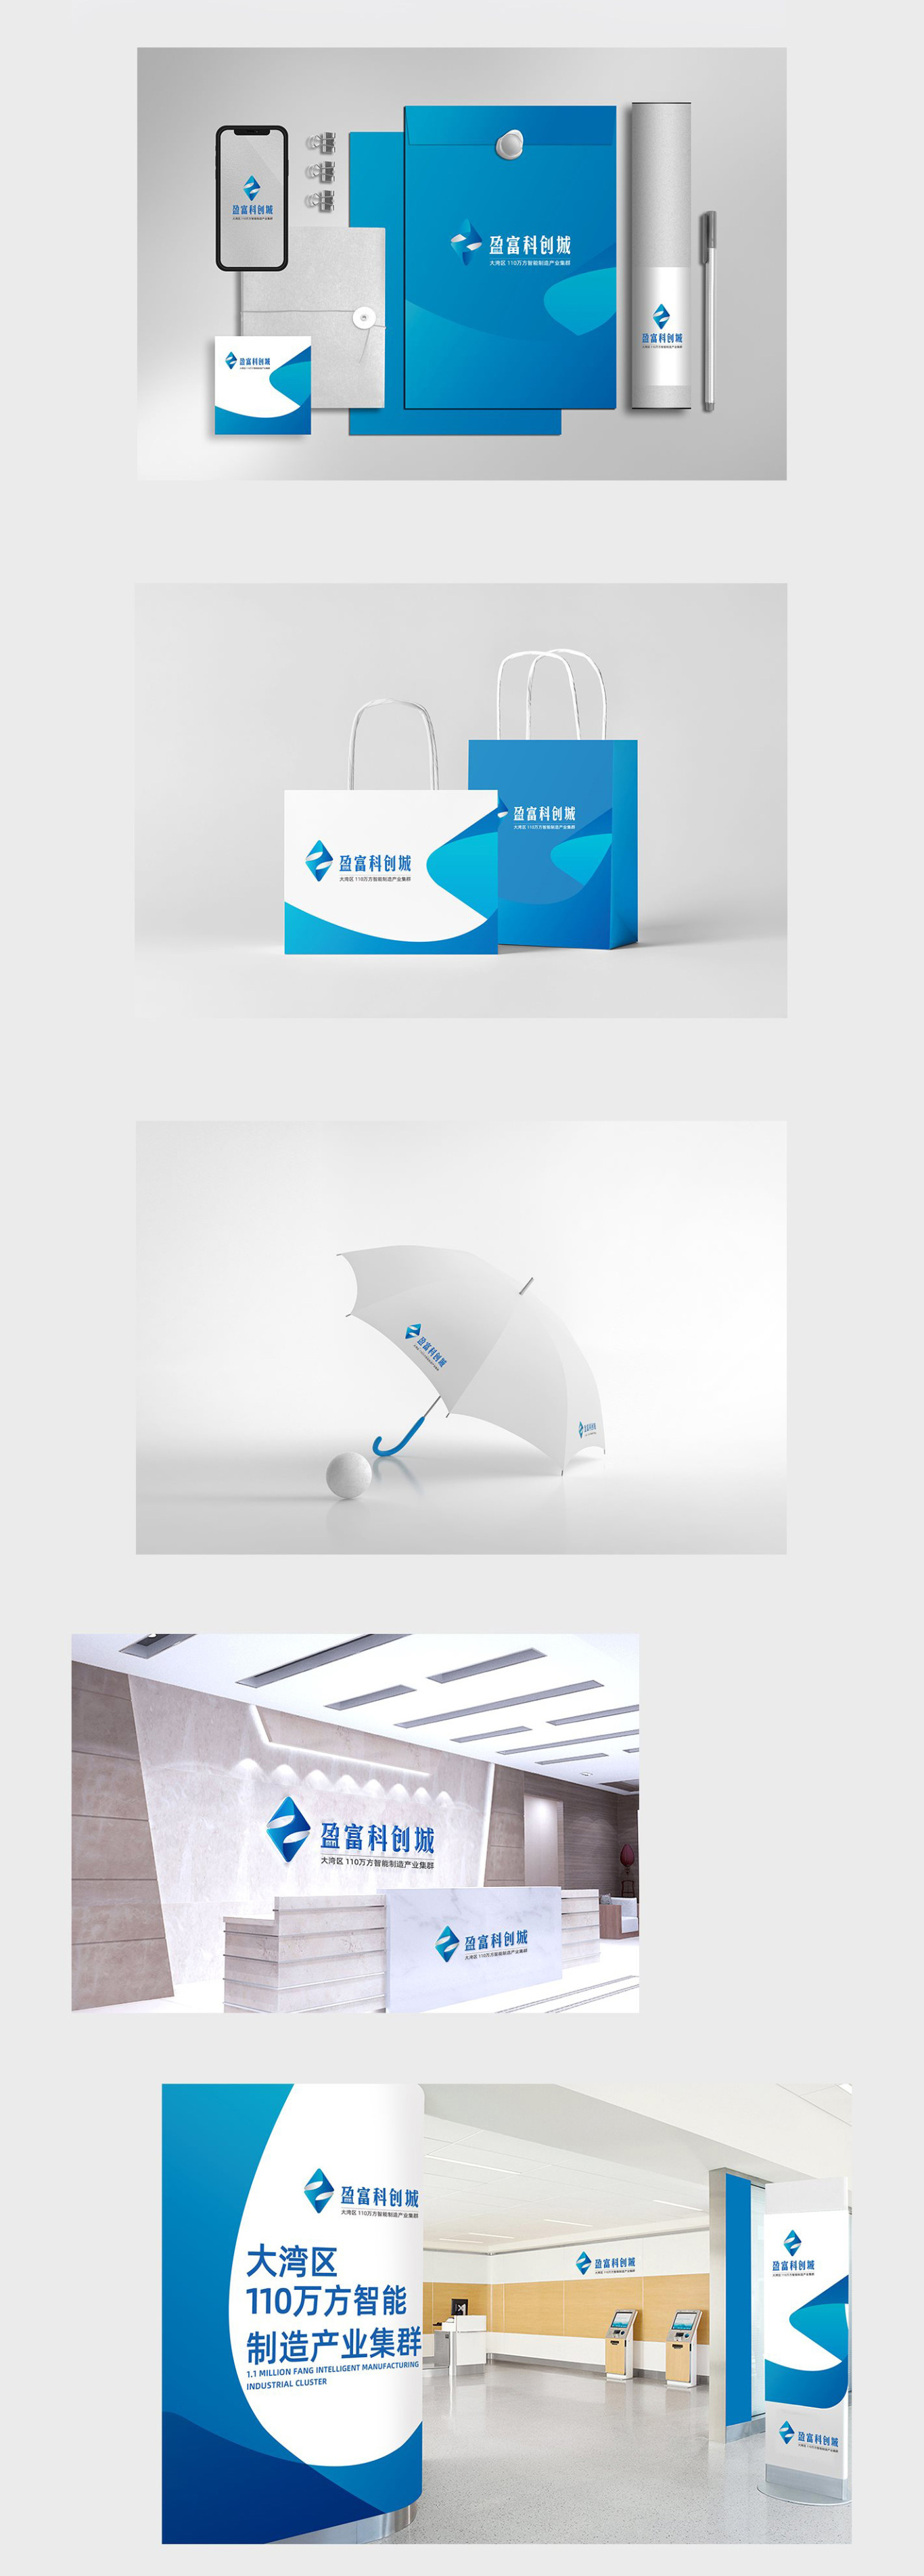 『盈富产业园』地产品牌包装企业VI设计 LOGO设计(方案一)图3